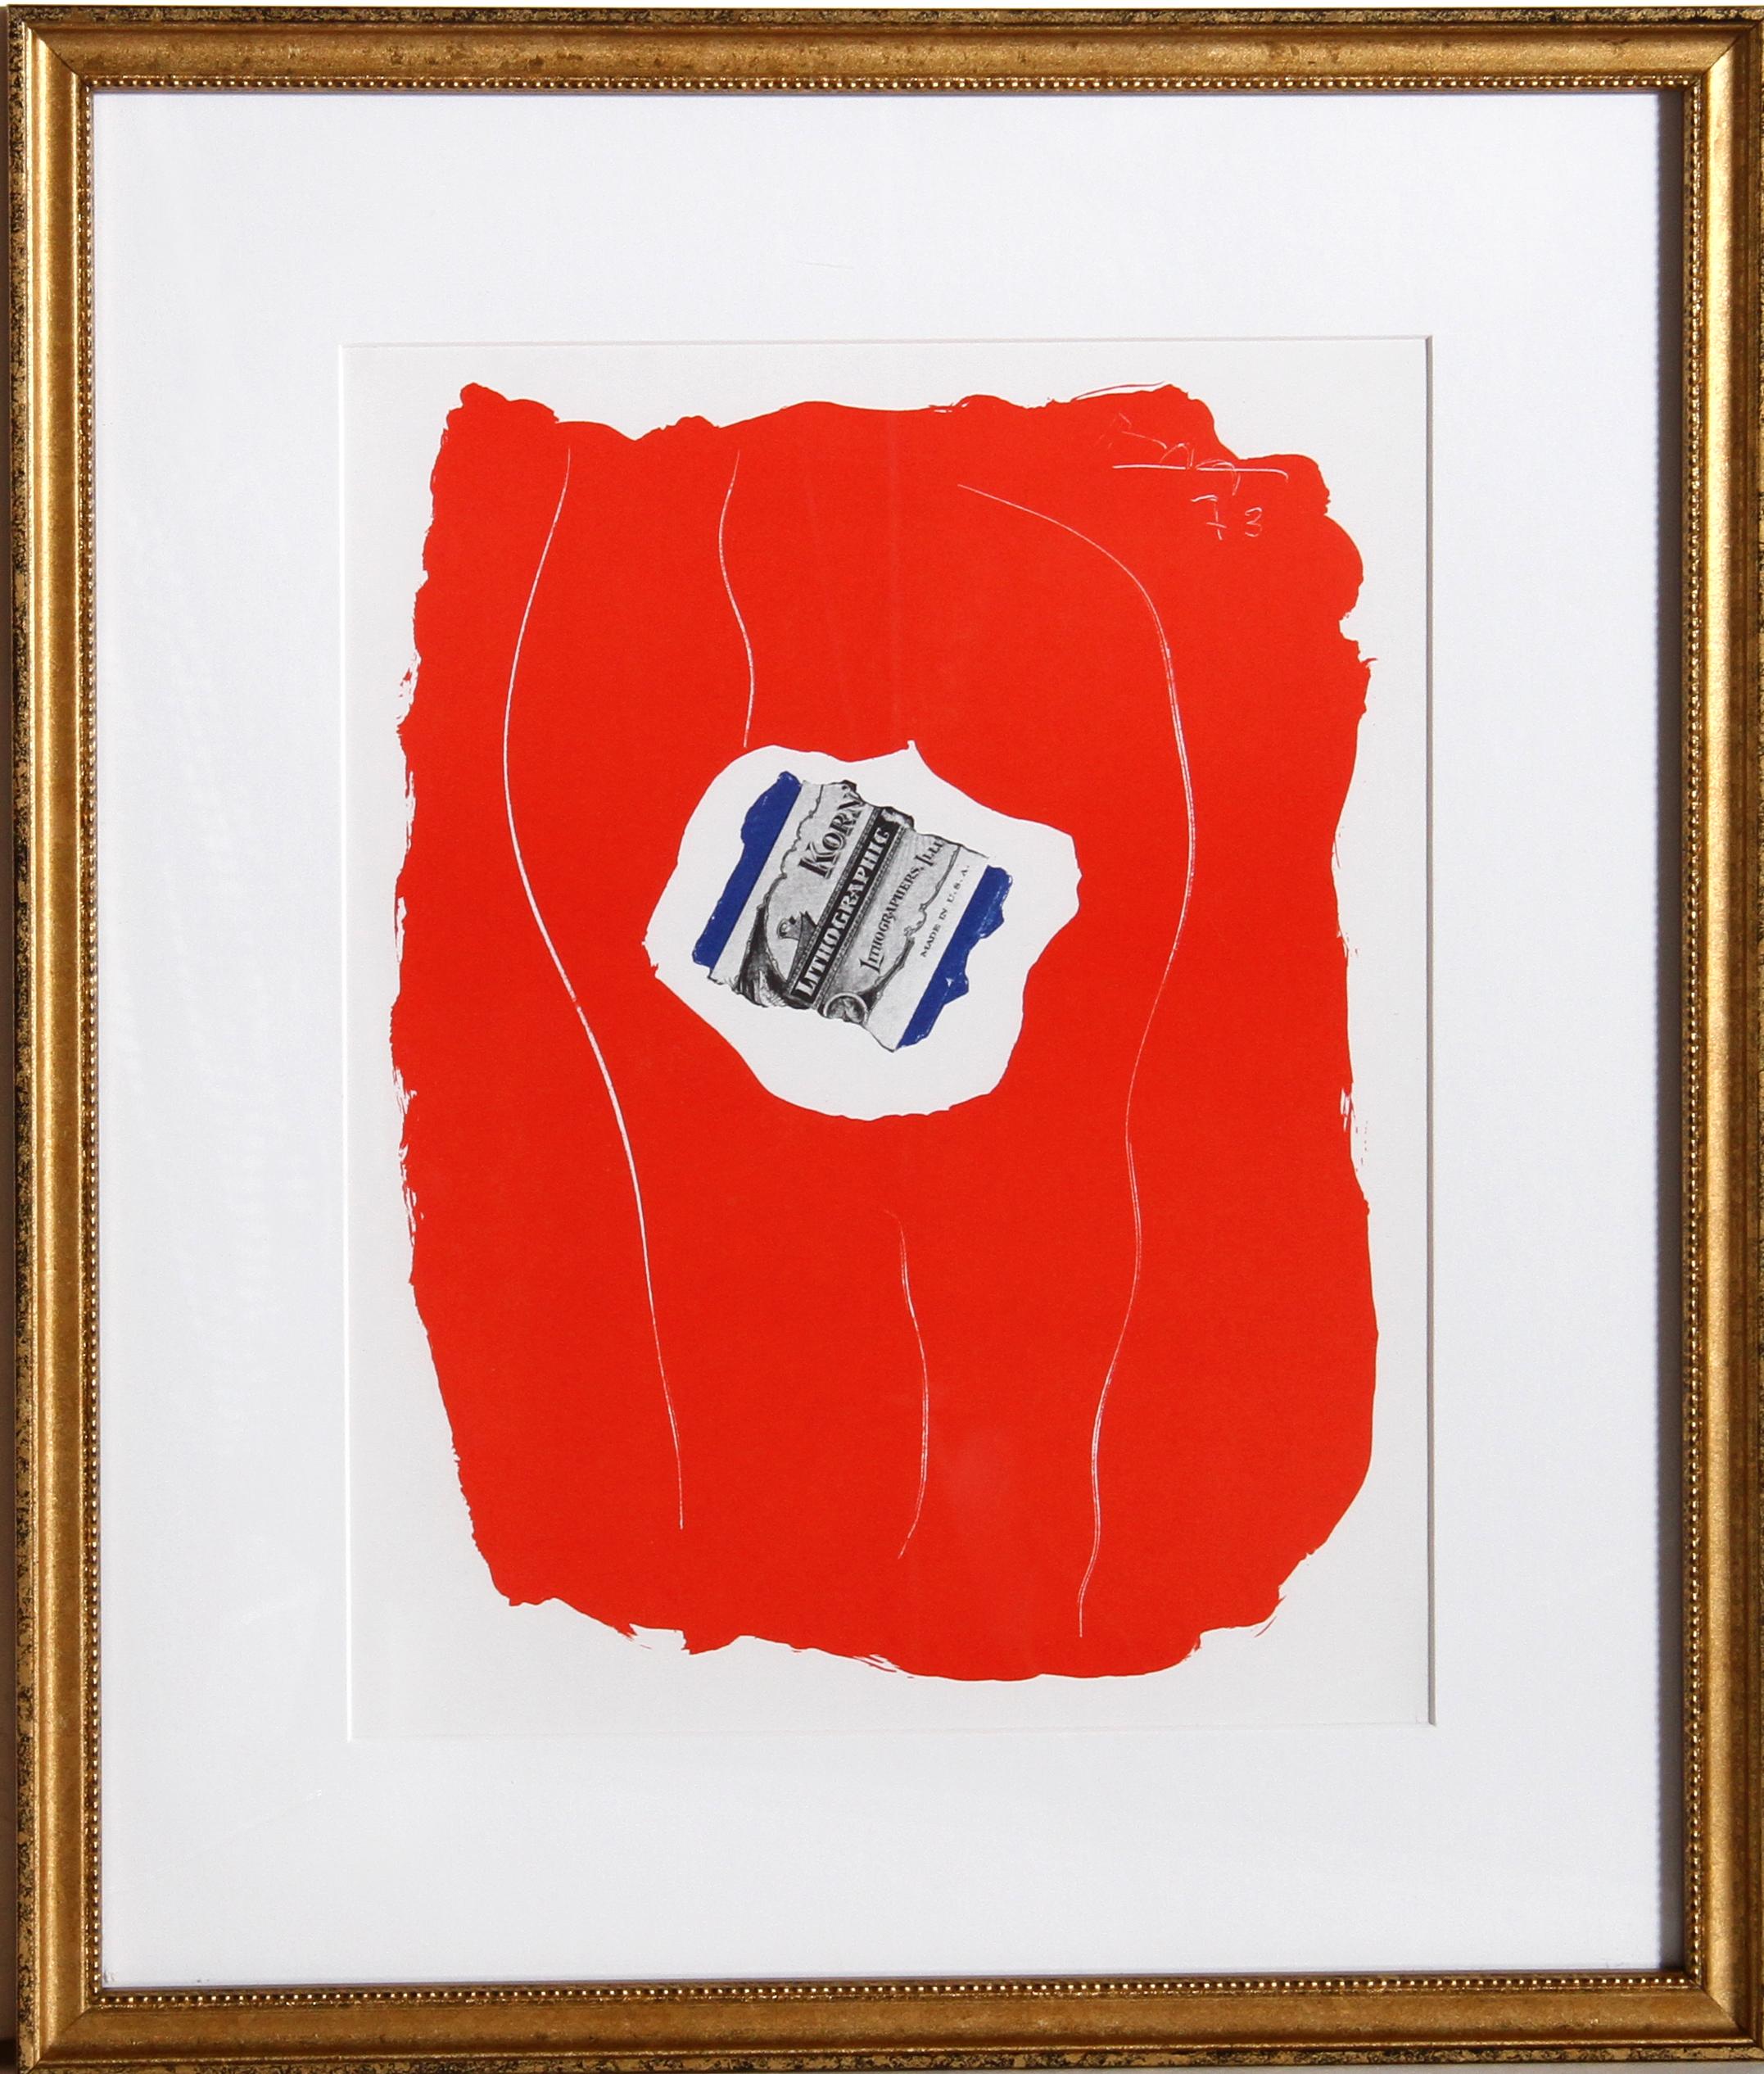 Artistics : Robert Motherwell
Titre : Tricolore 137
Année : 1973
Moyen d'expression : Lithographie offset, signée dans la plaque
Taille : 15 x 10.5 in. (38.1 x 26.67 cm)
Cadre : 19 x 16 pouces

Publié par le magazine XXe Siècle, 1973